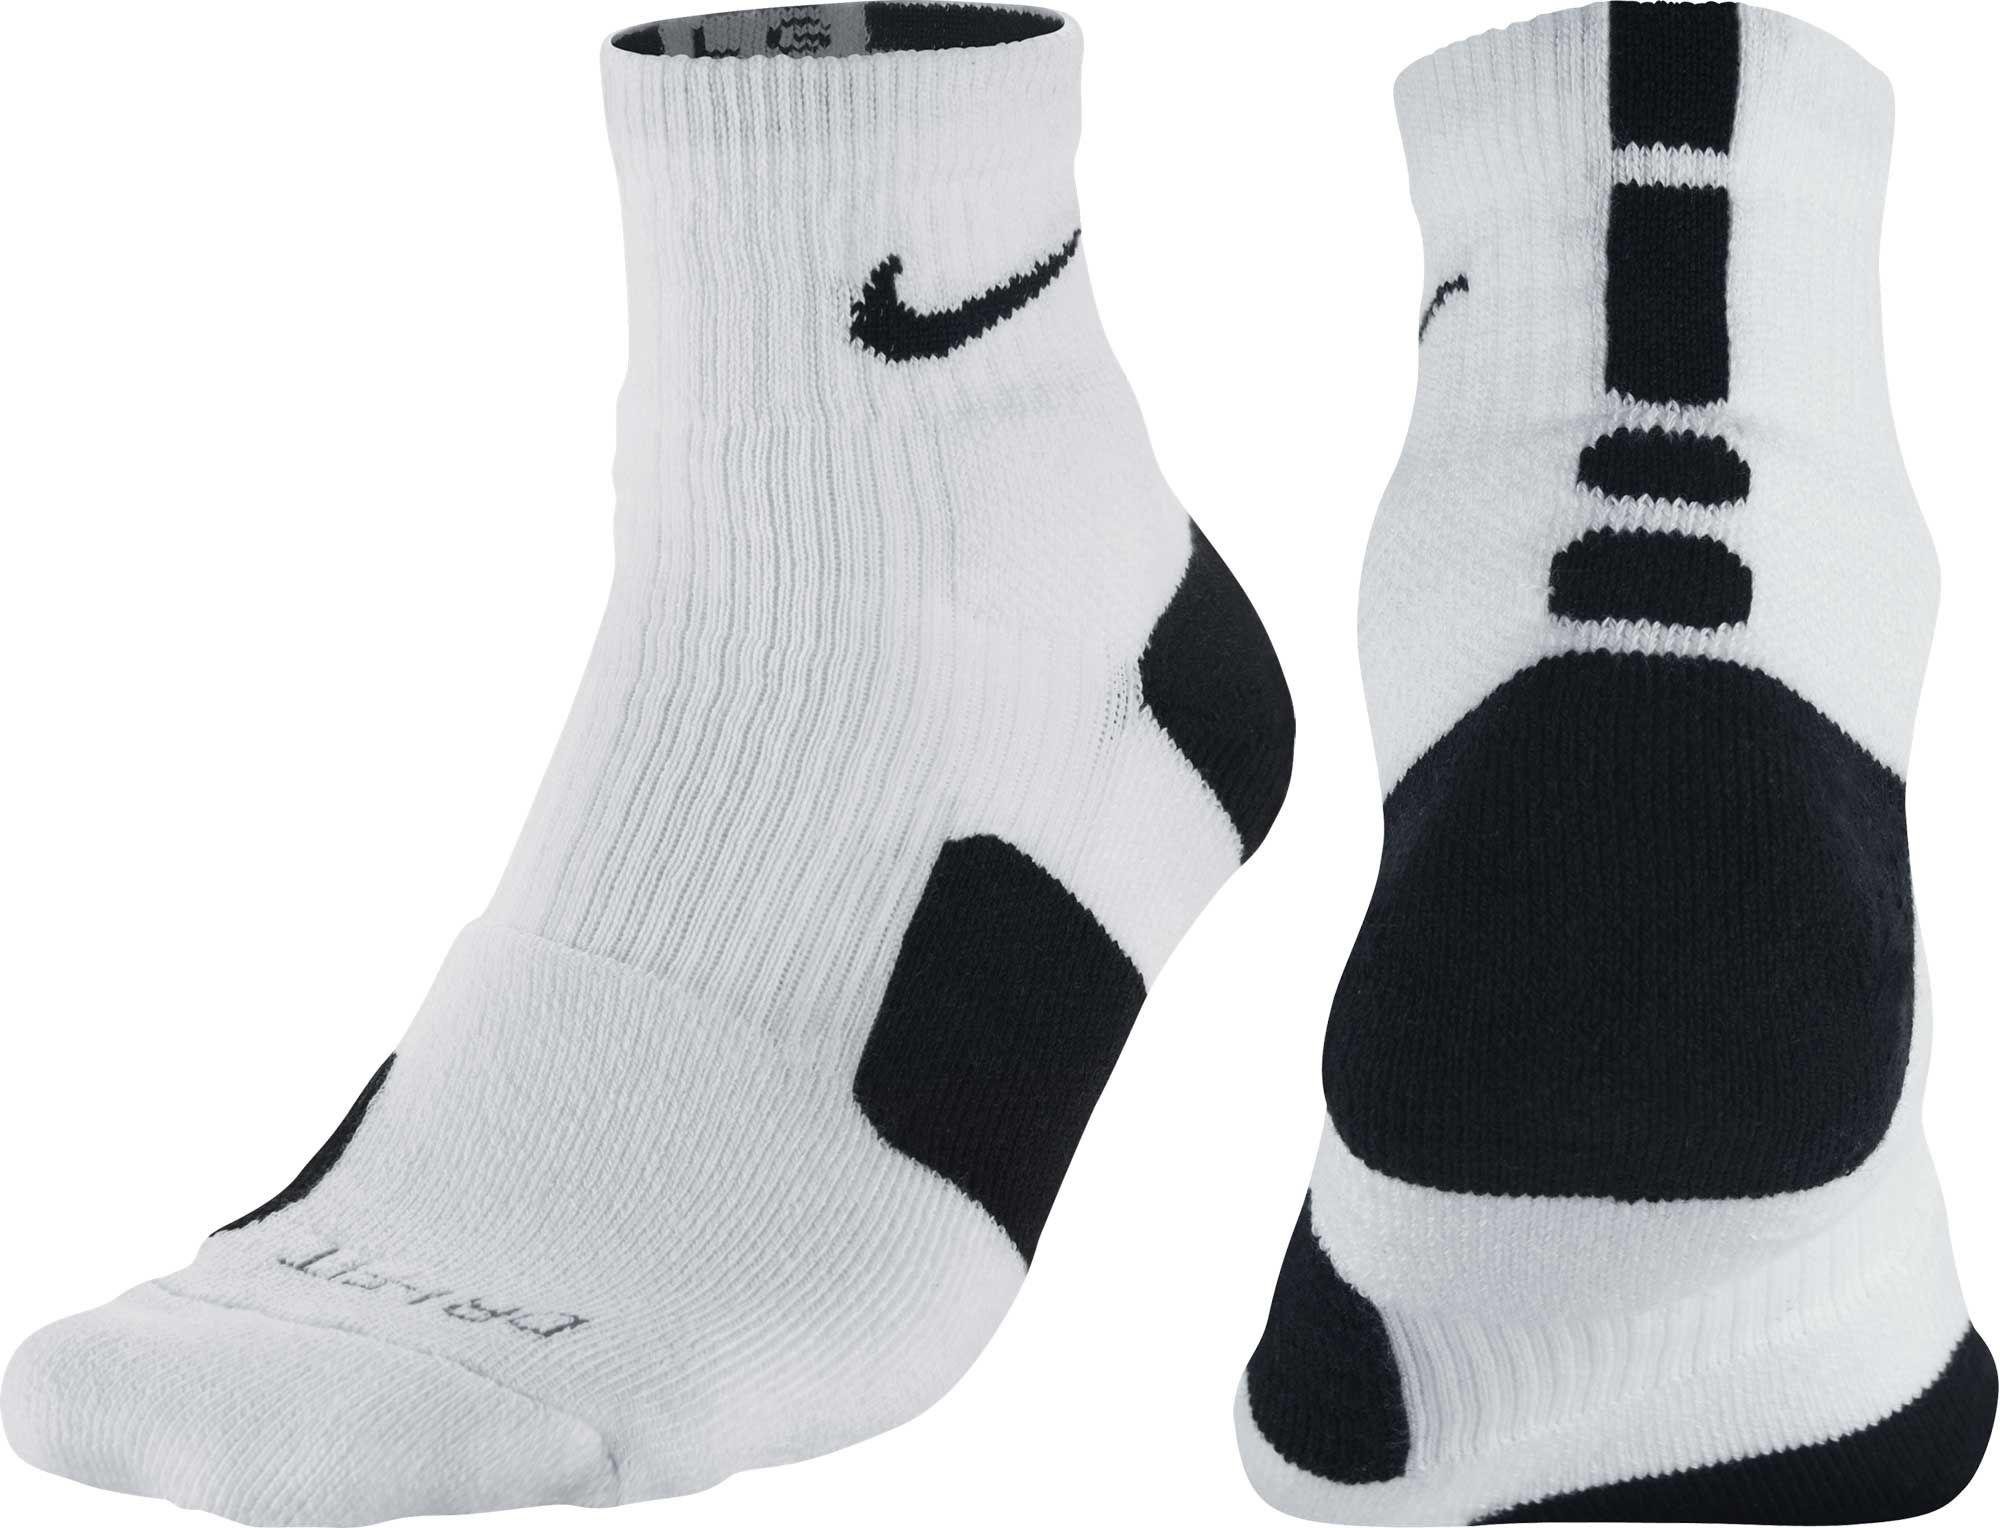 Quarter Basketball Socks 